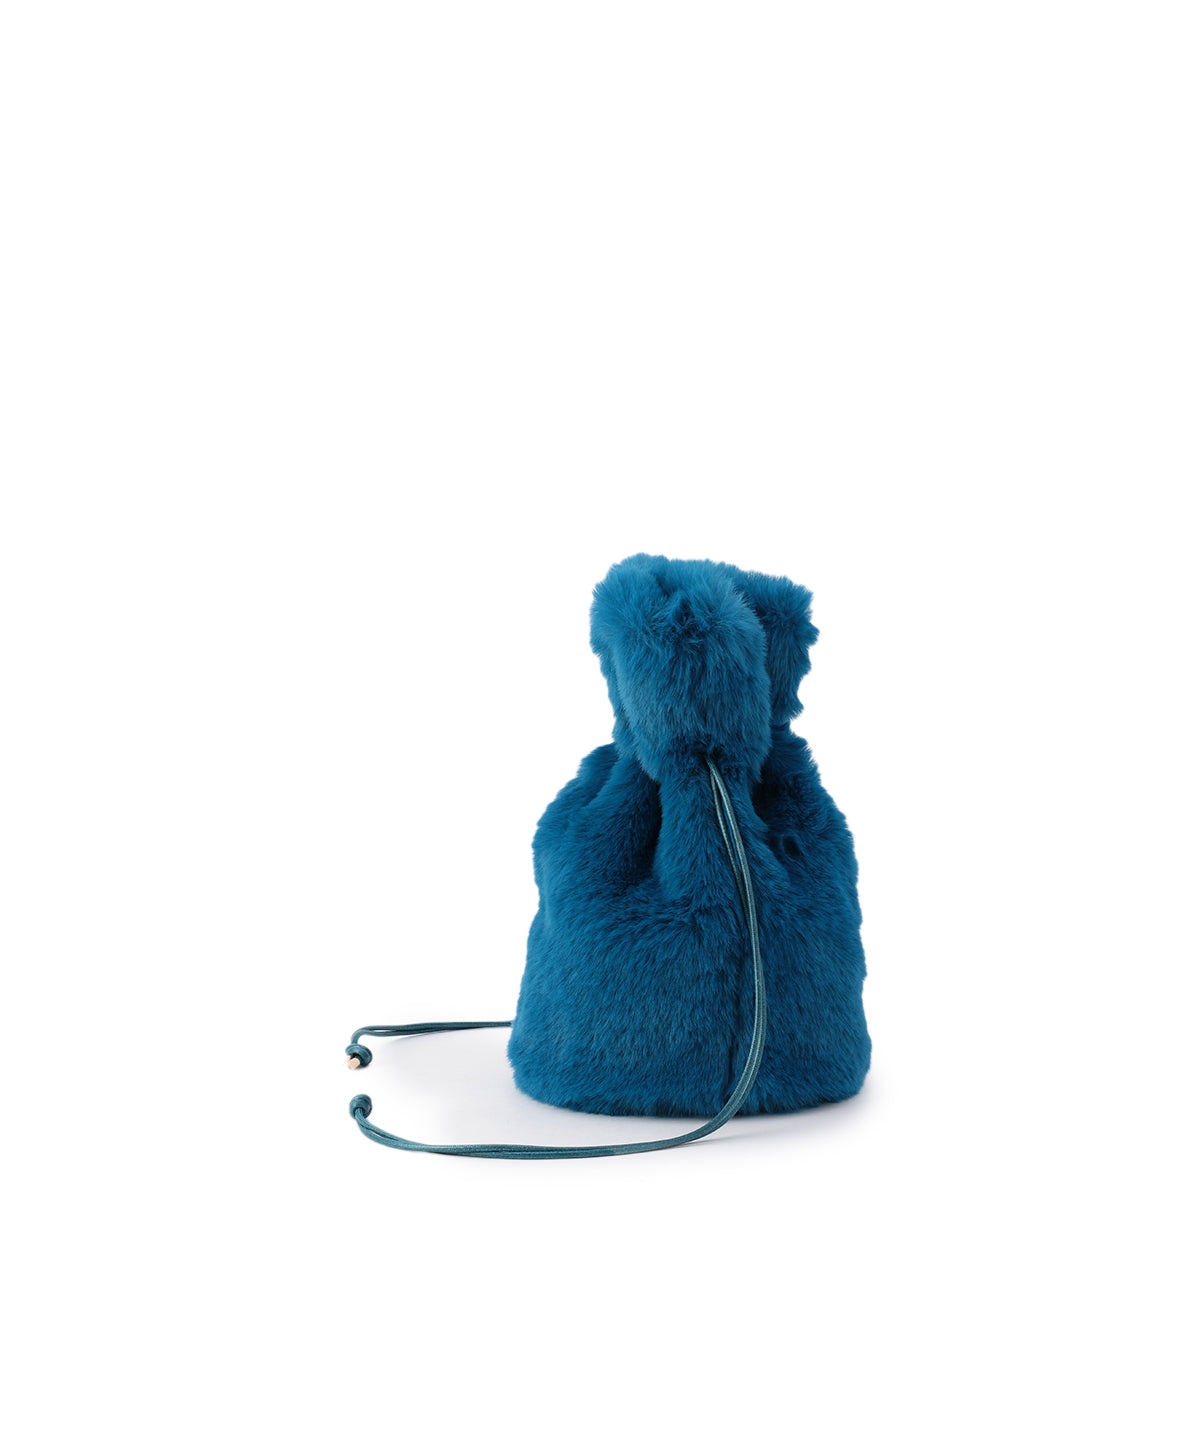 Eco Fur Drawstring Bag(Small)E.BLUE